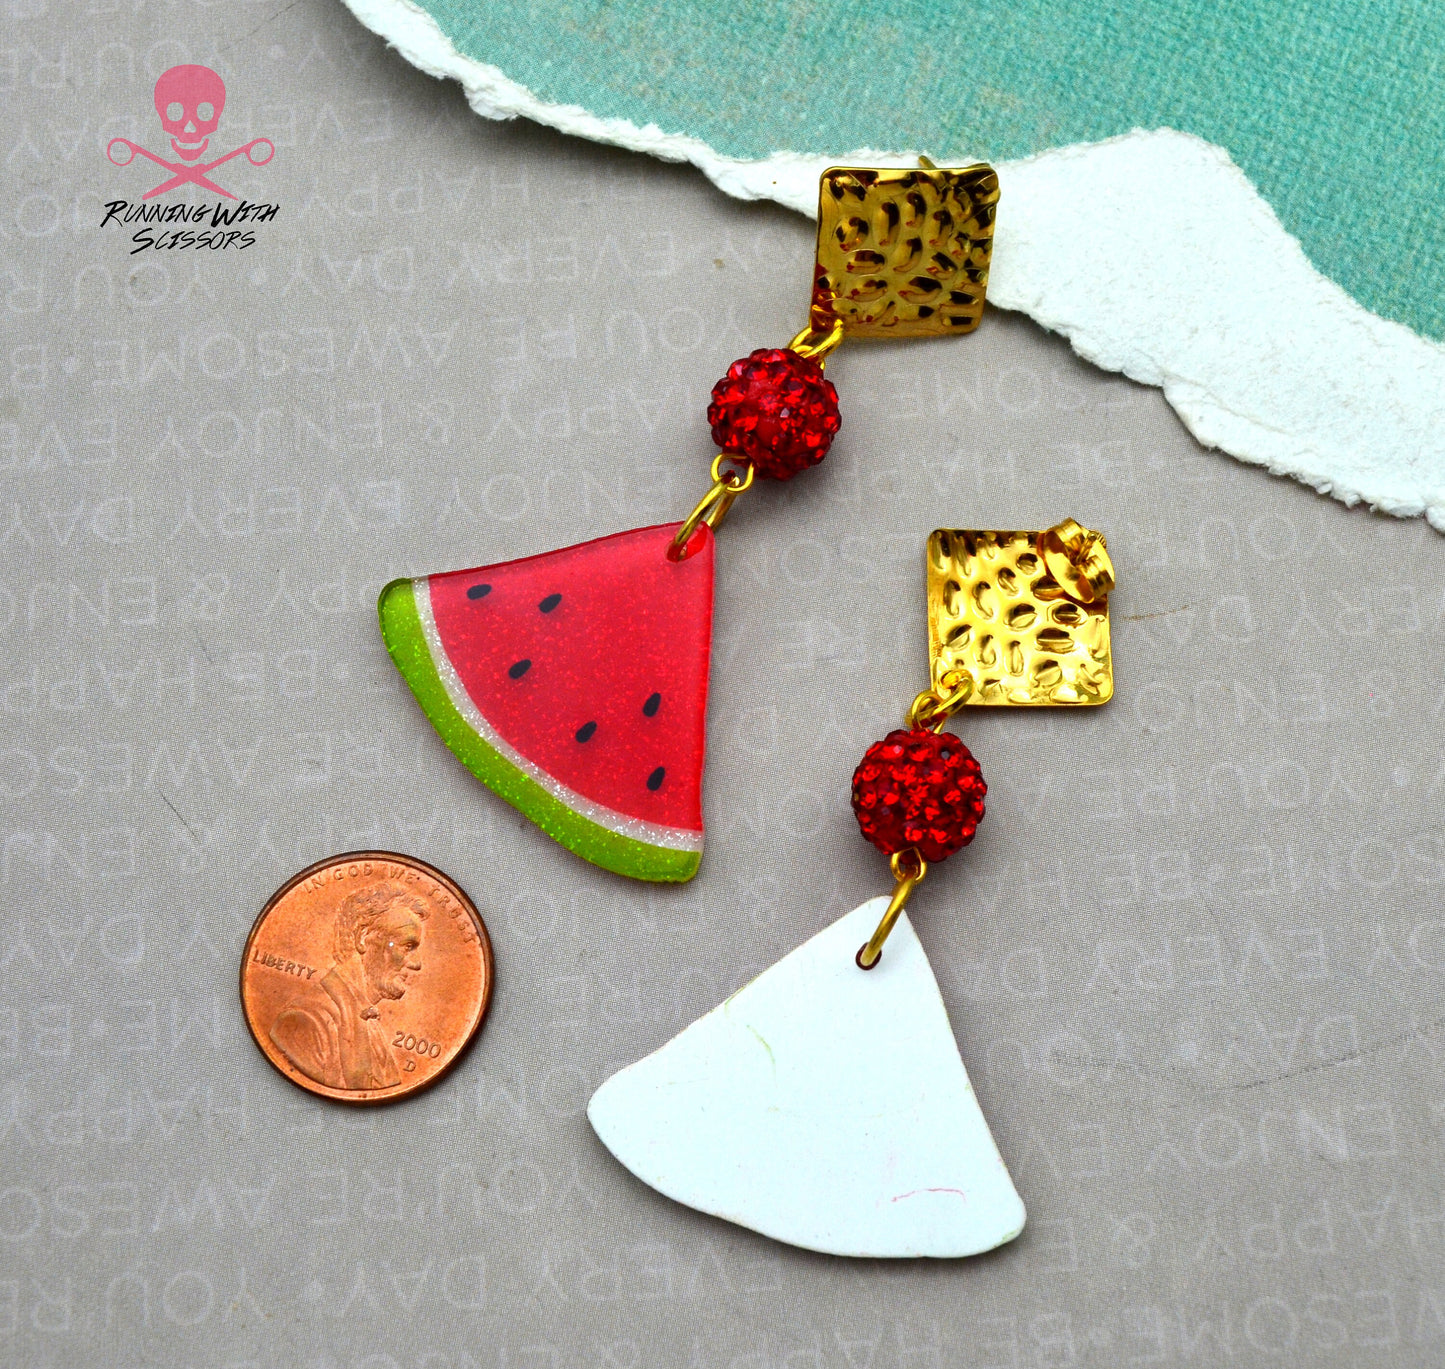 SALE Darling Watermelon Dangle Charm Earrings